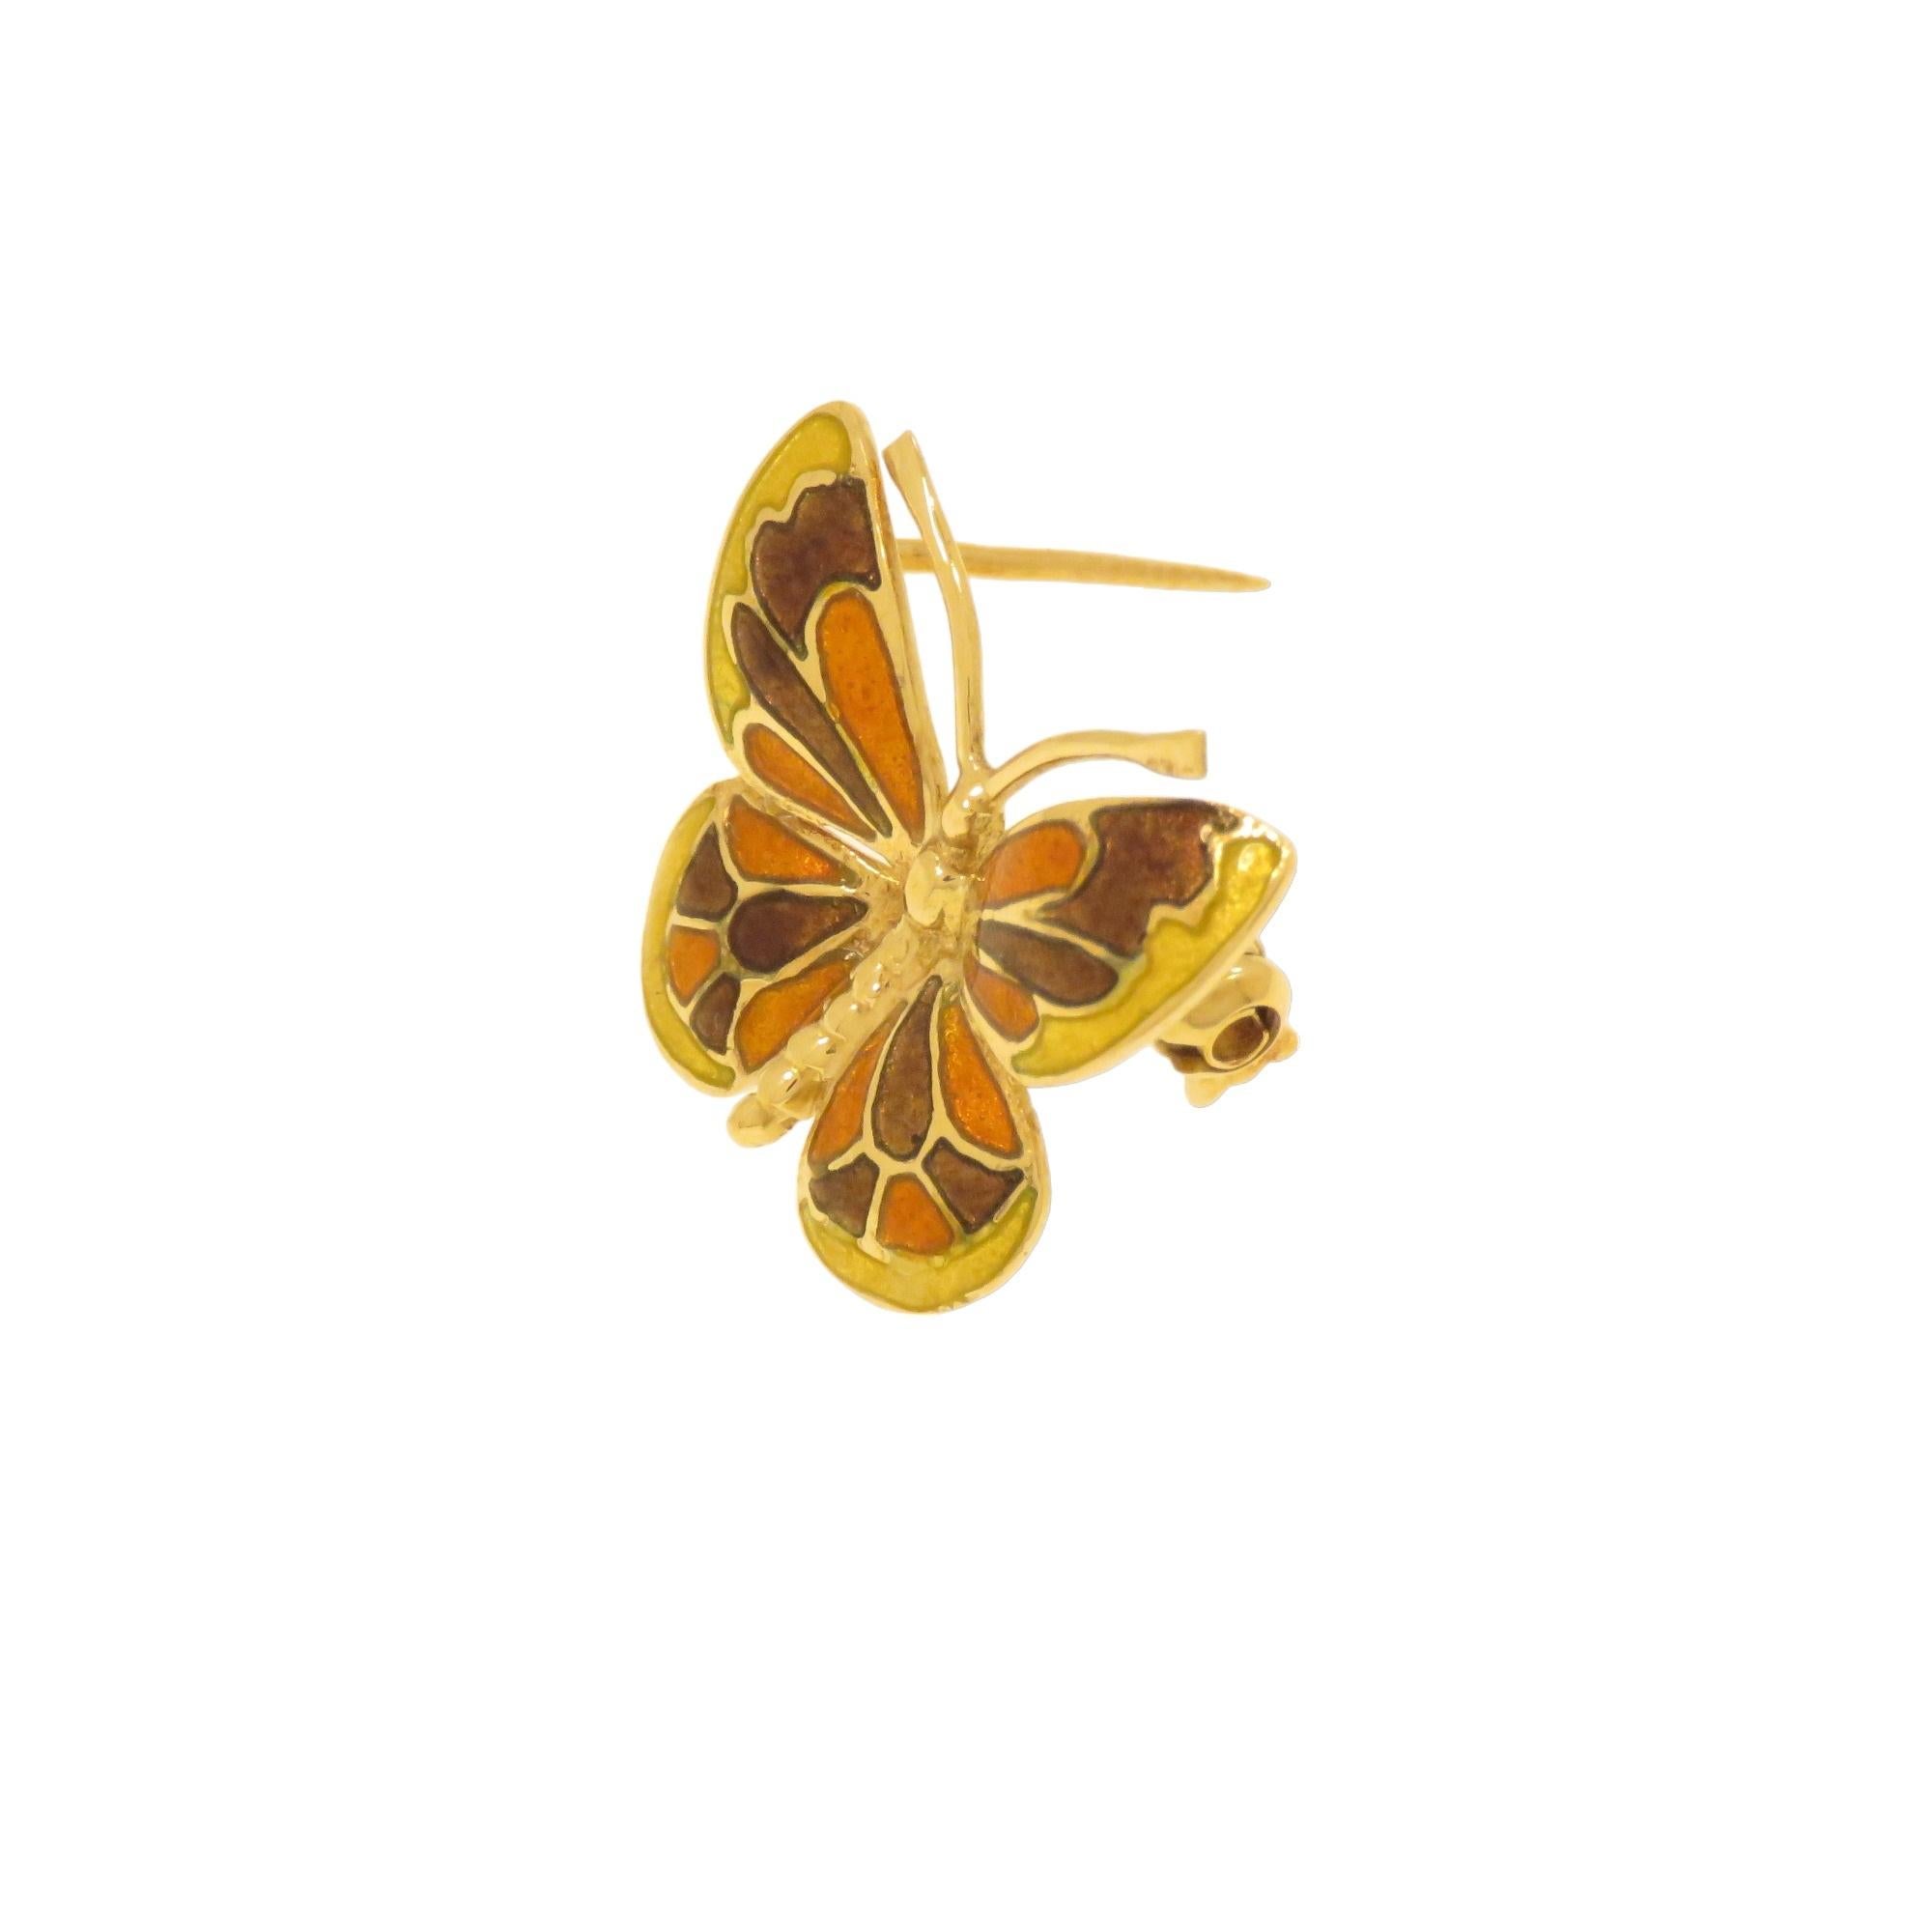 Elegante e graziosa piccola spilla d'epoca a forma di farfalla realizzata in oro giallo 18 carati. Le ali sono smaltate a fuoco in più colori sulle tonalità dal giallo al marrone. Realizzata a mano in Italia nel 1970 circa. Le dimensioni della